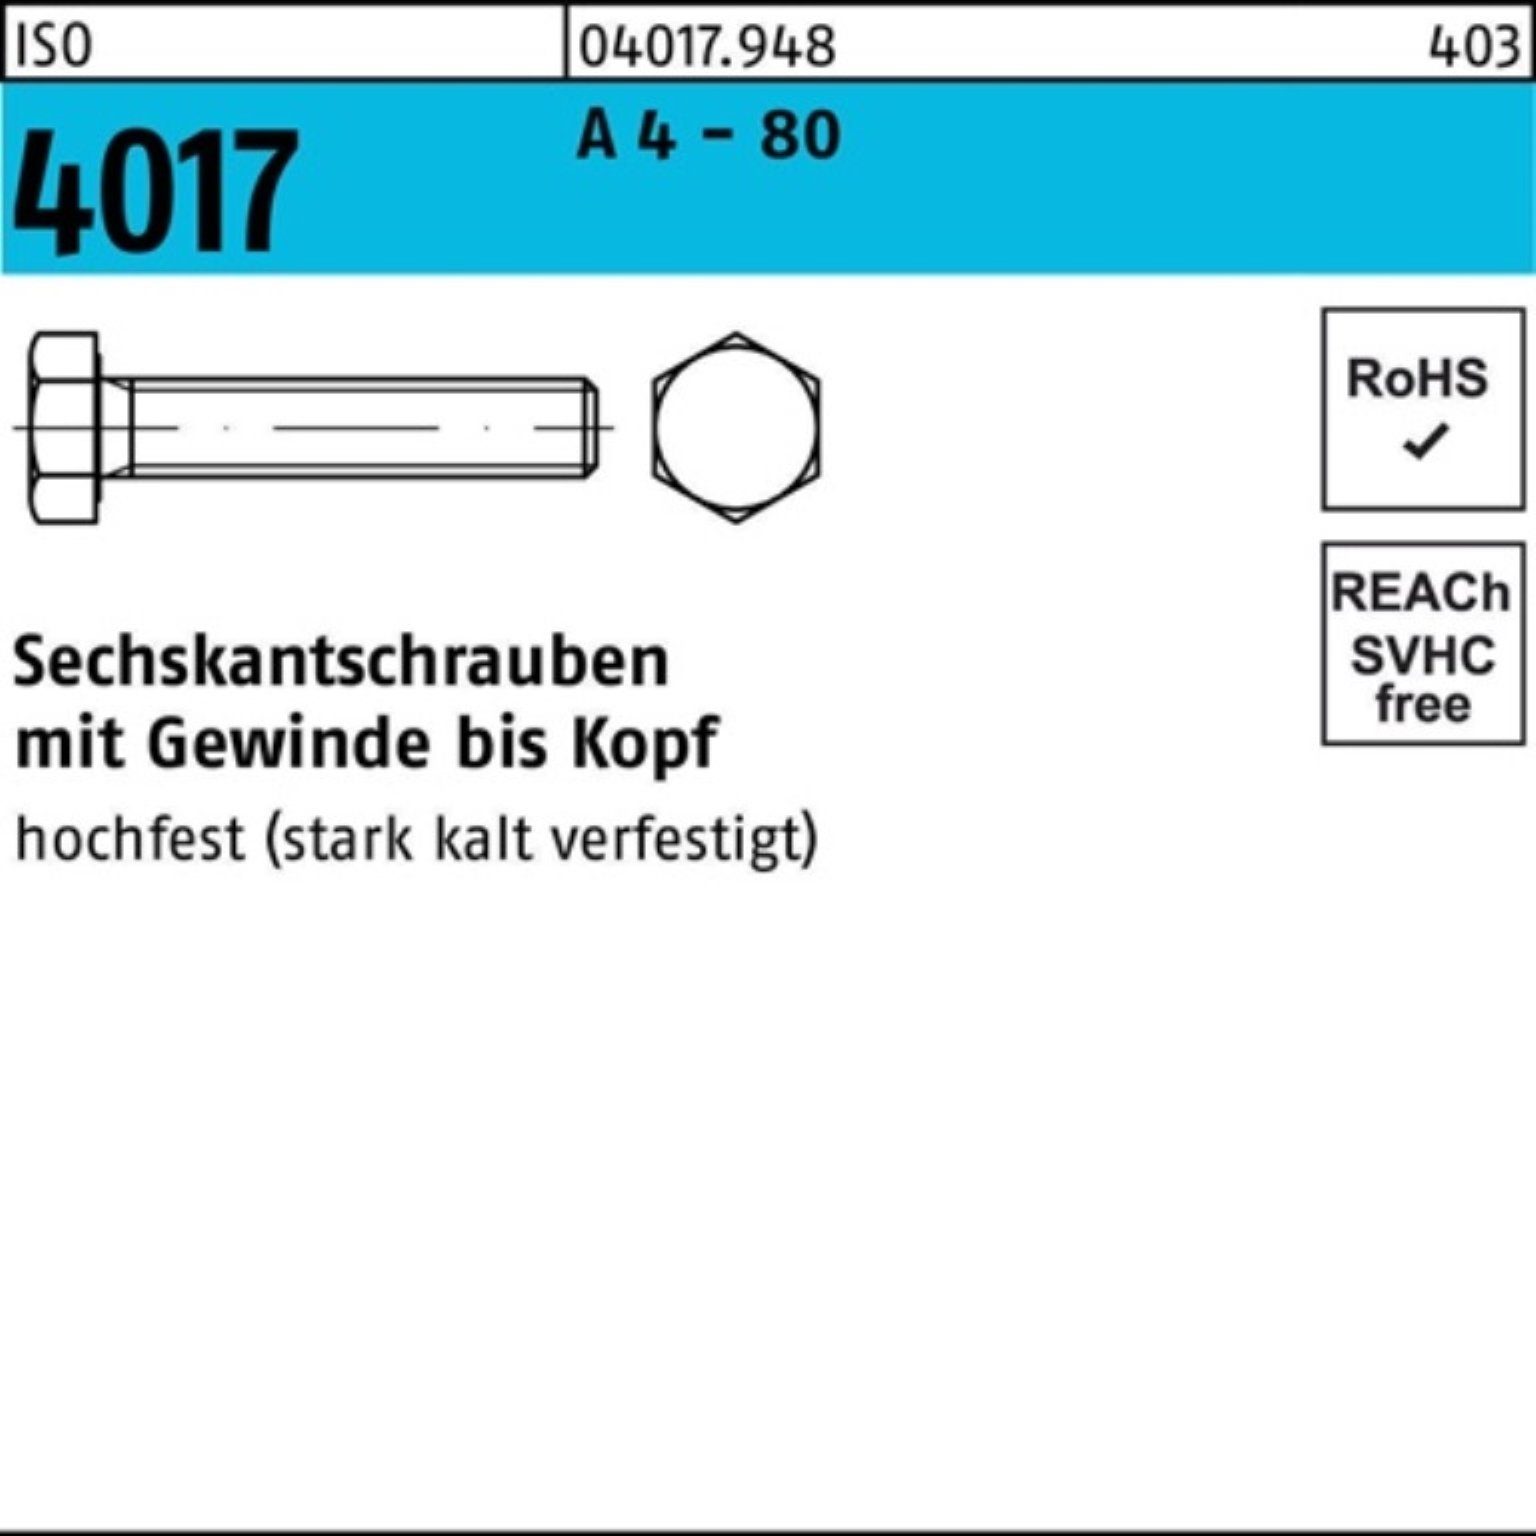 Bufab Sechskantschraube 100er Pack Sechskantschraube ISO 4017 VG M10x 30 A 4 - 80 100 Stück I